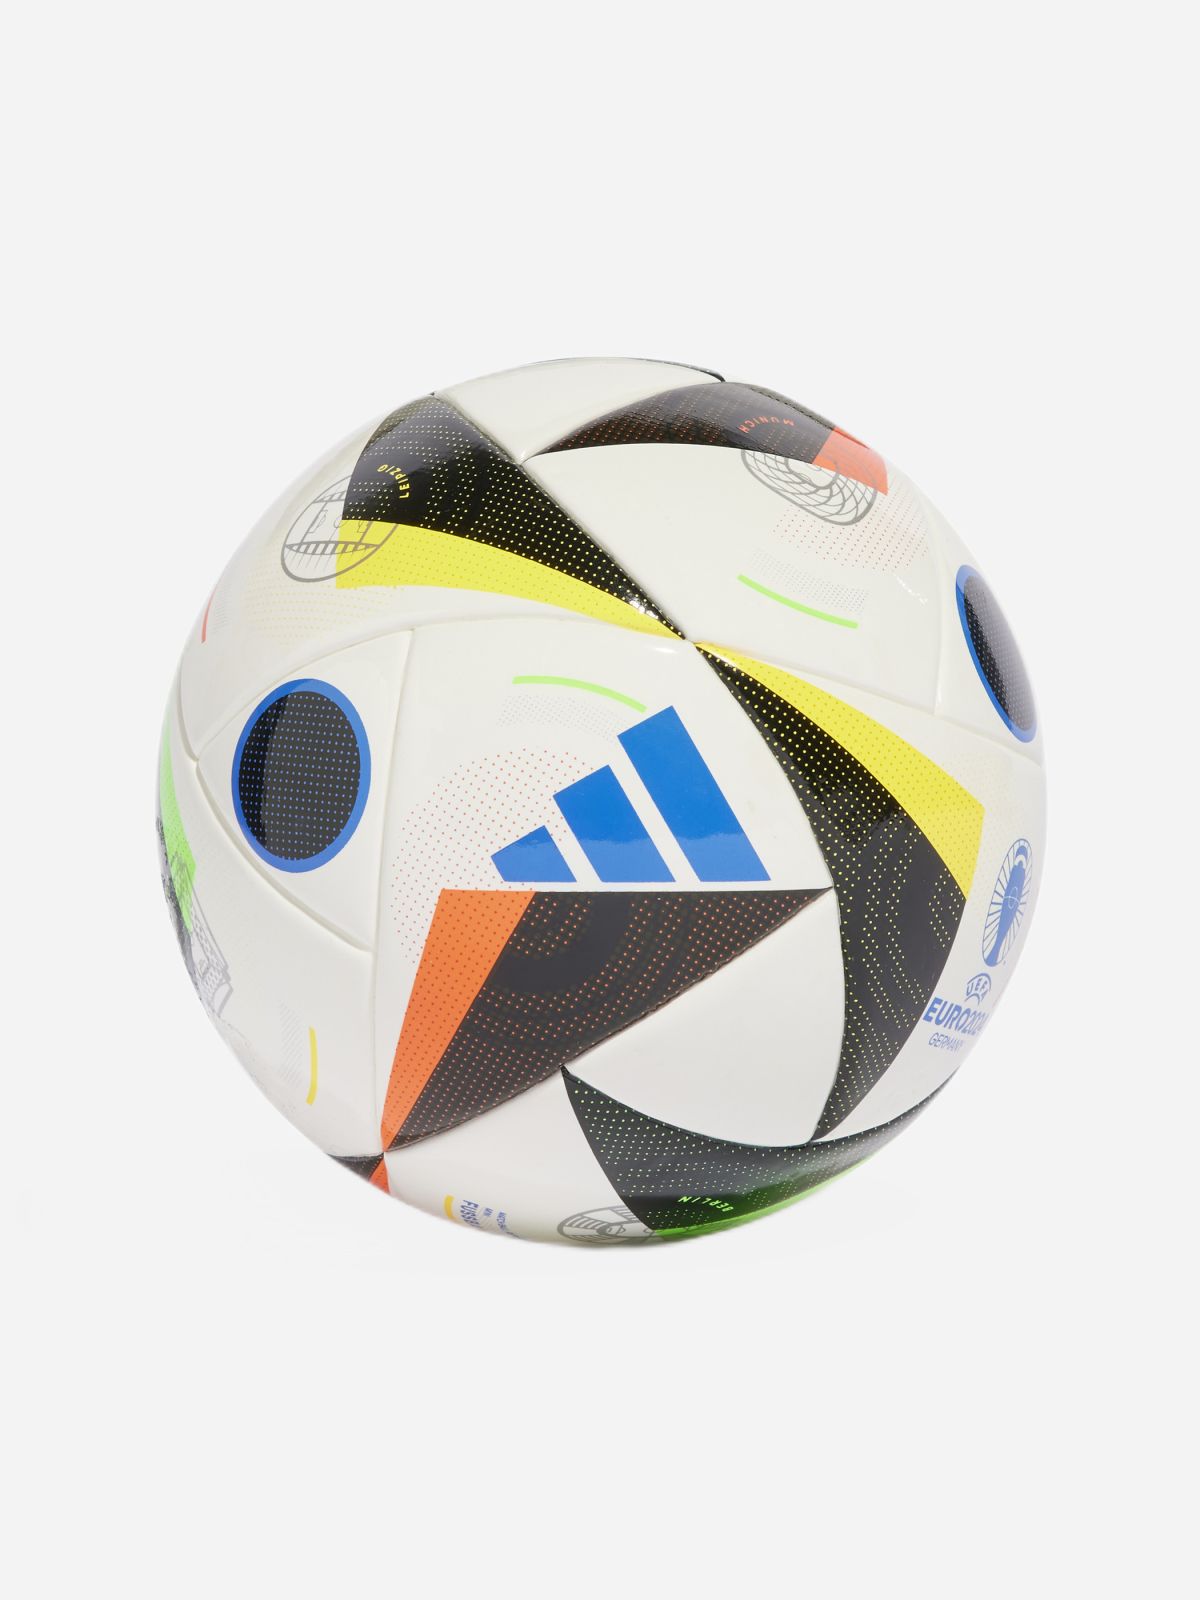  כדור כדורגל מיני EURO 24 / בנים של ADIDAS Performance